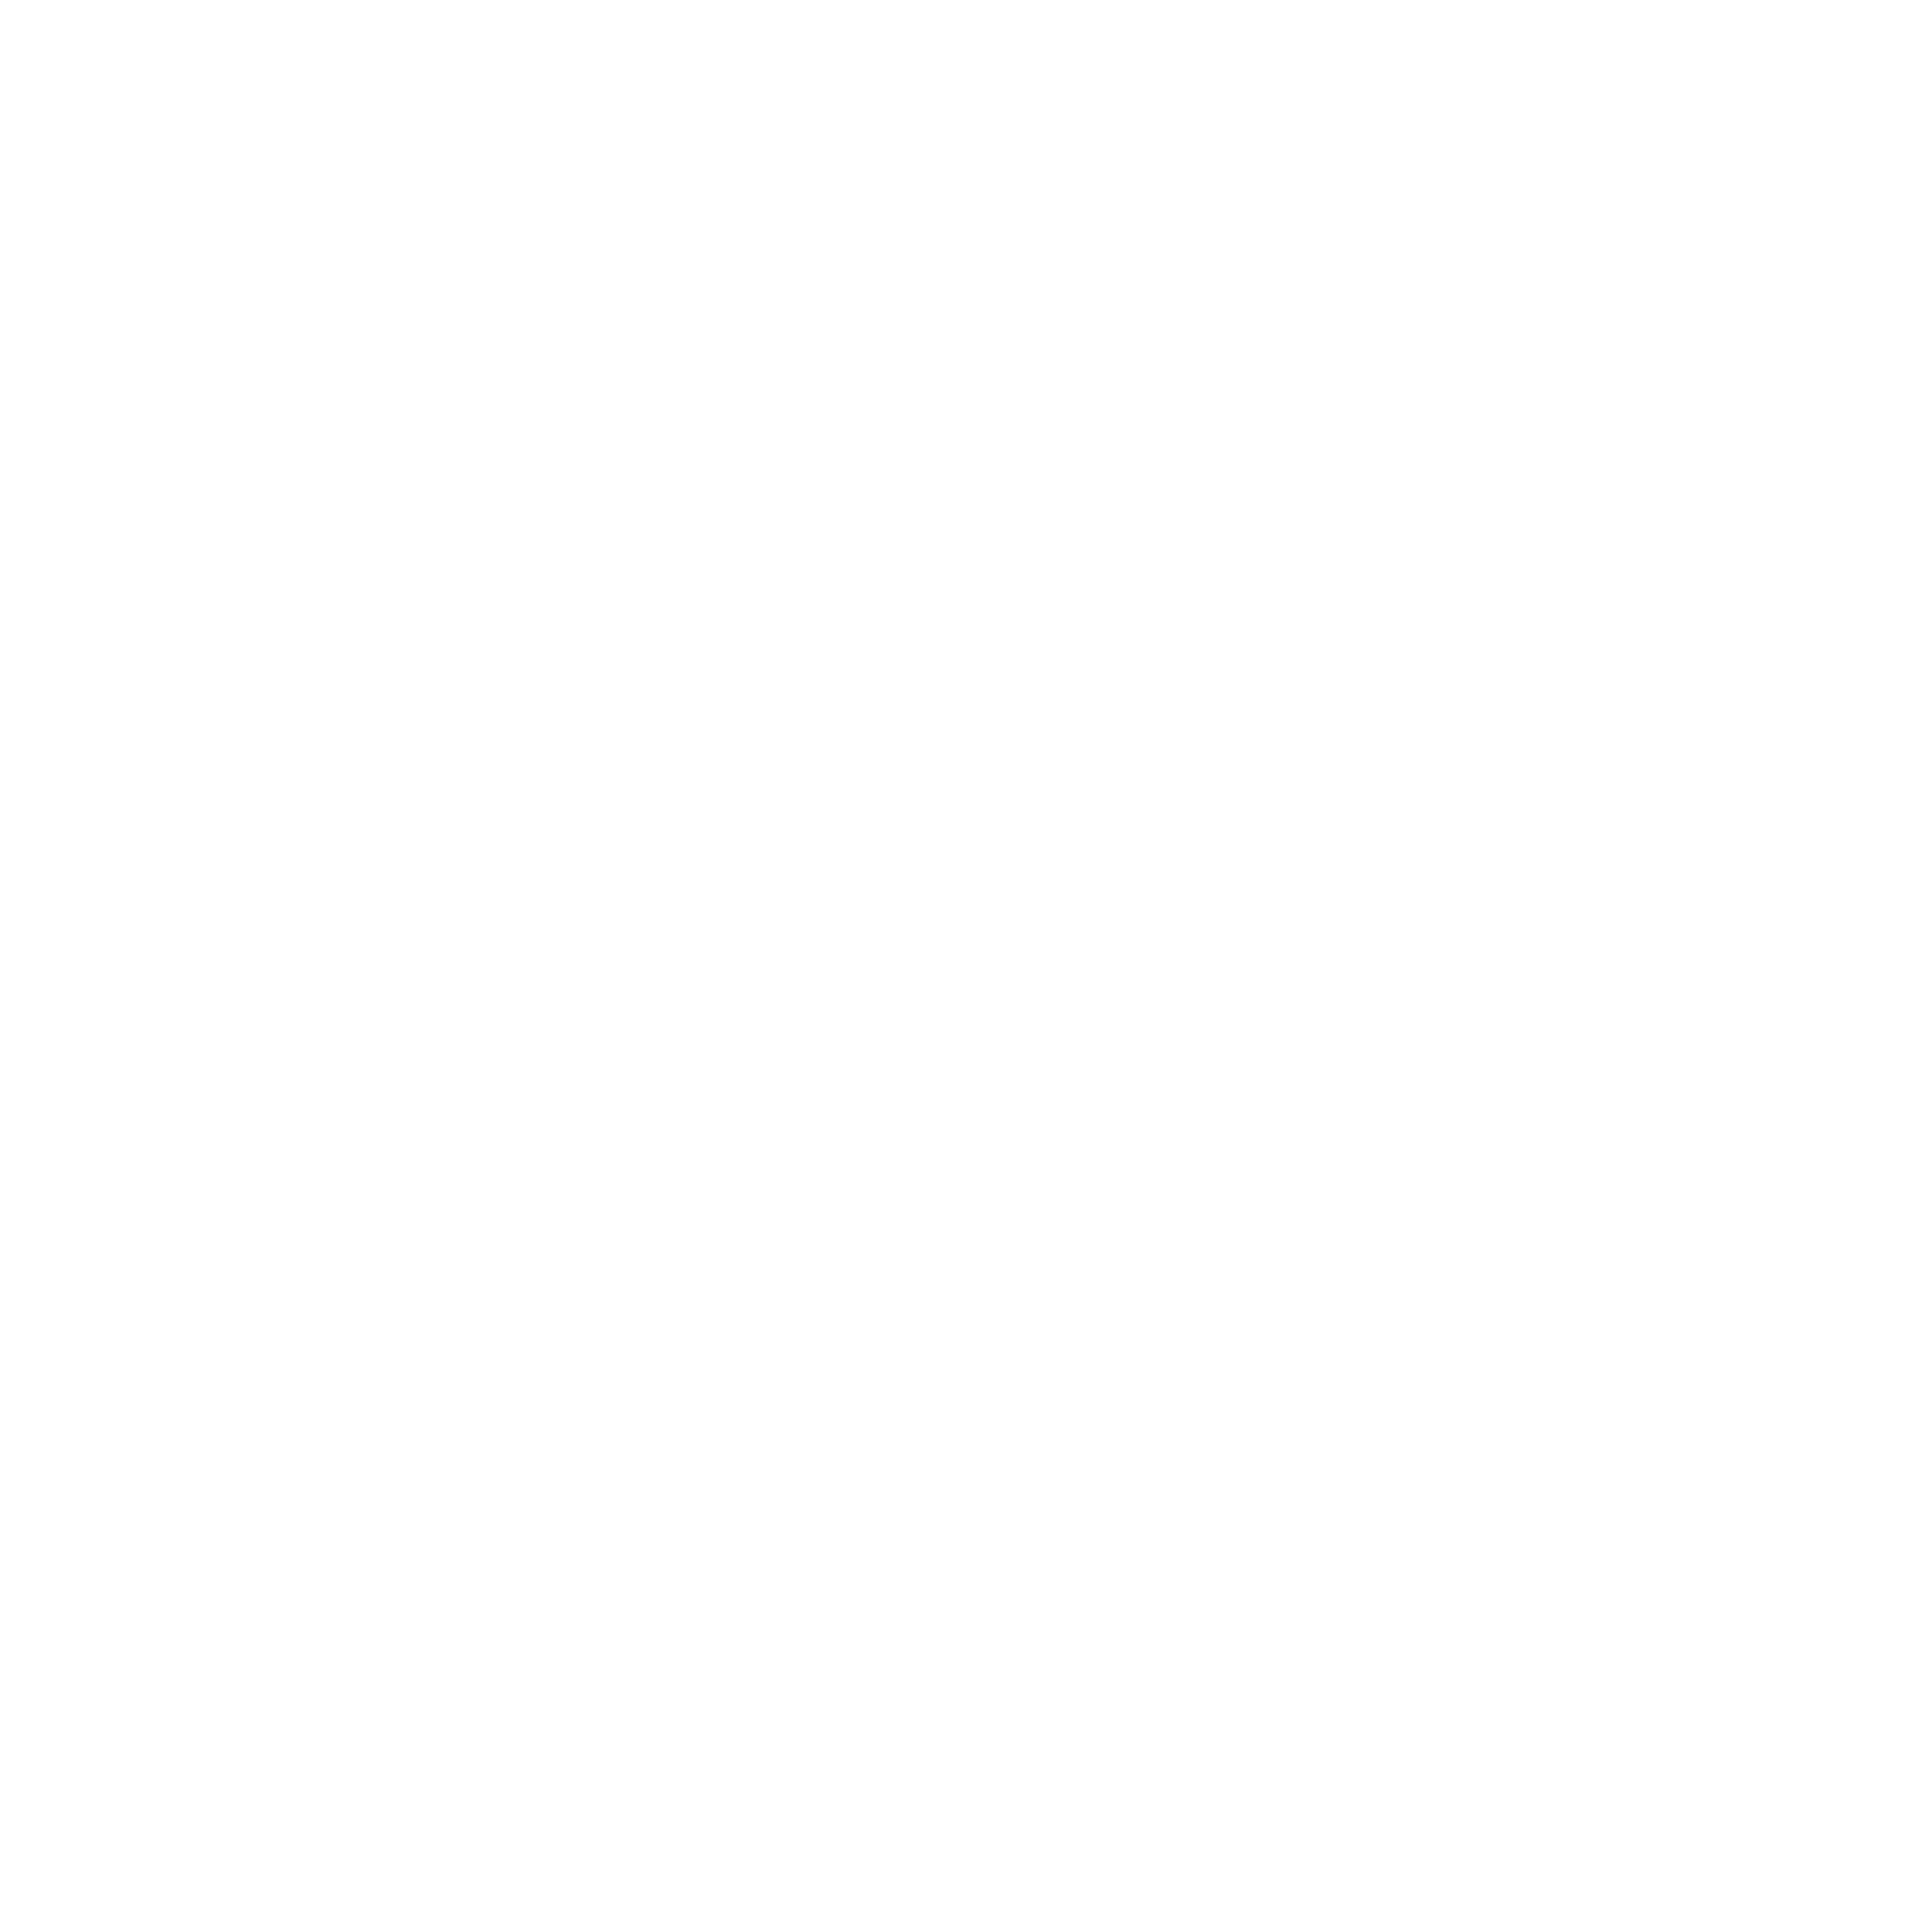 北海道スープカレー Suage